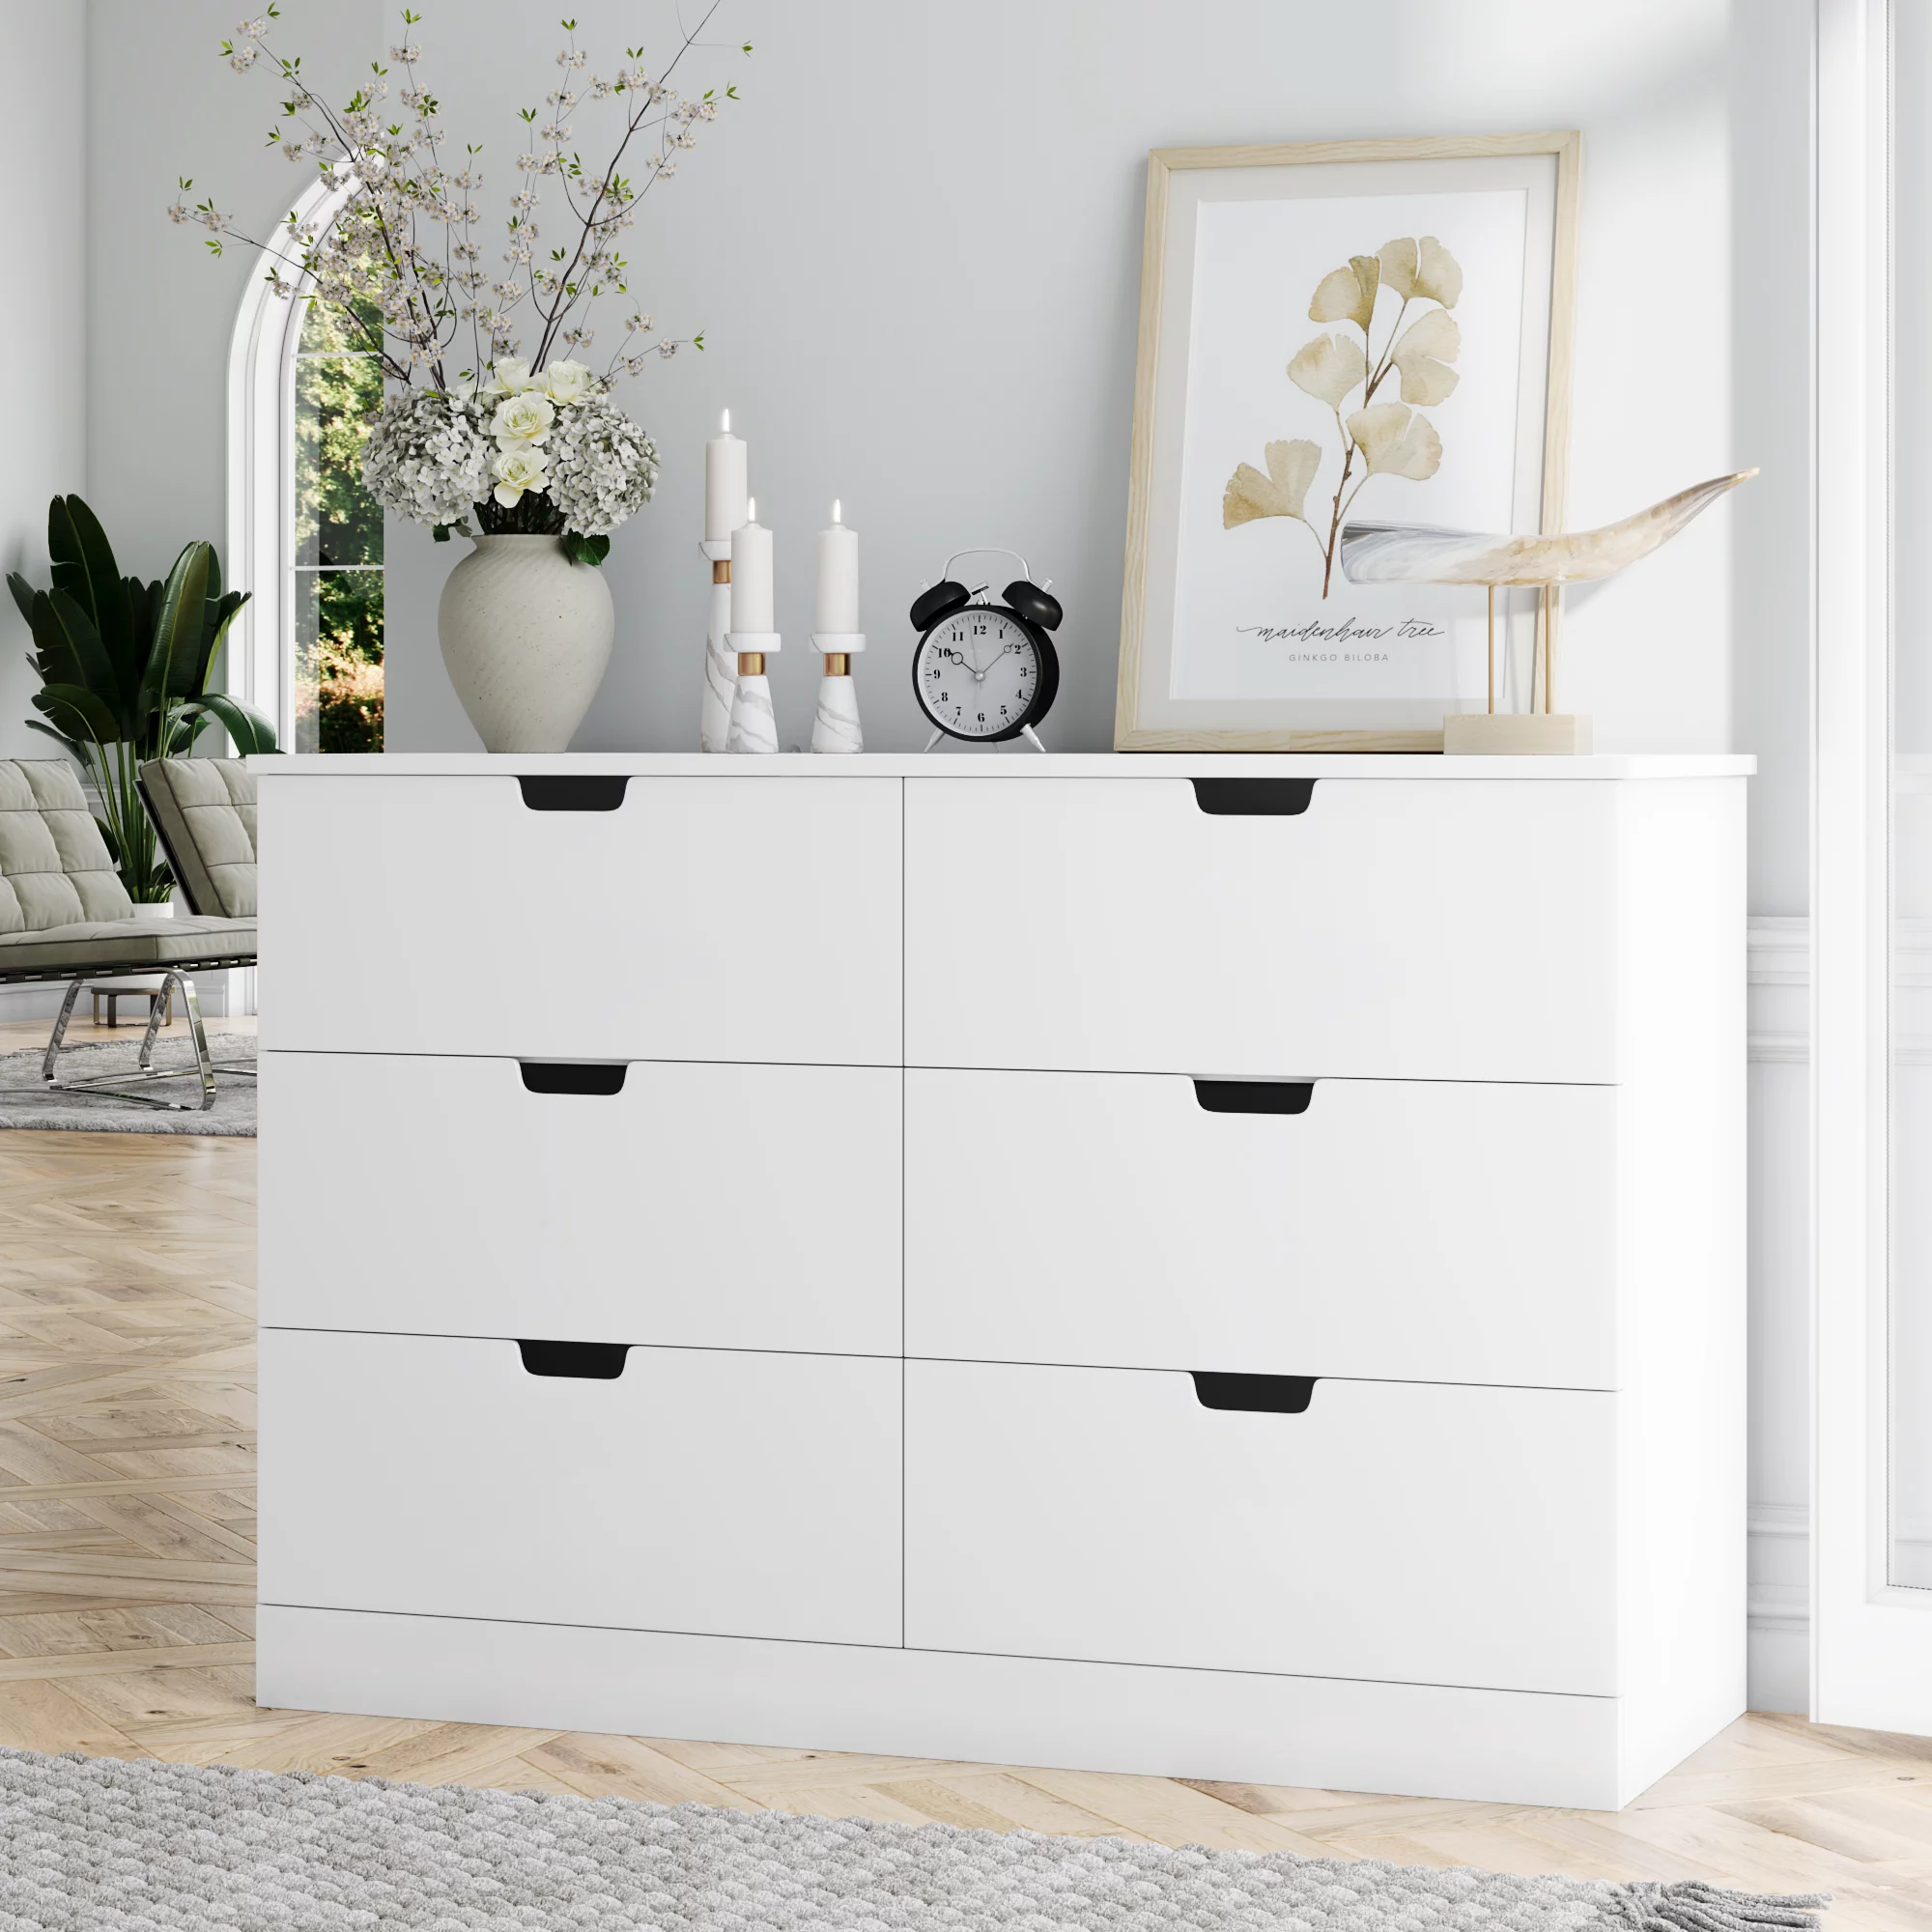 https://bigbigmart.com/wp-content/uploads/2023/04/Homfa-6-Drawer-Dresser-for-Bedroom-Modern-White-Chest-Wood-Storage-Cabinet-for-Living-Room10.webp